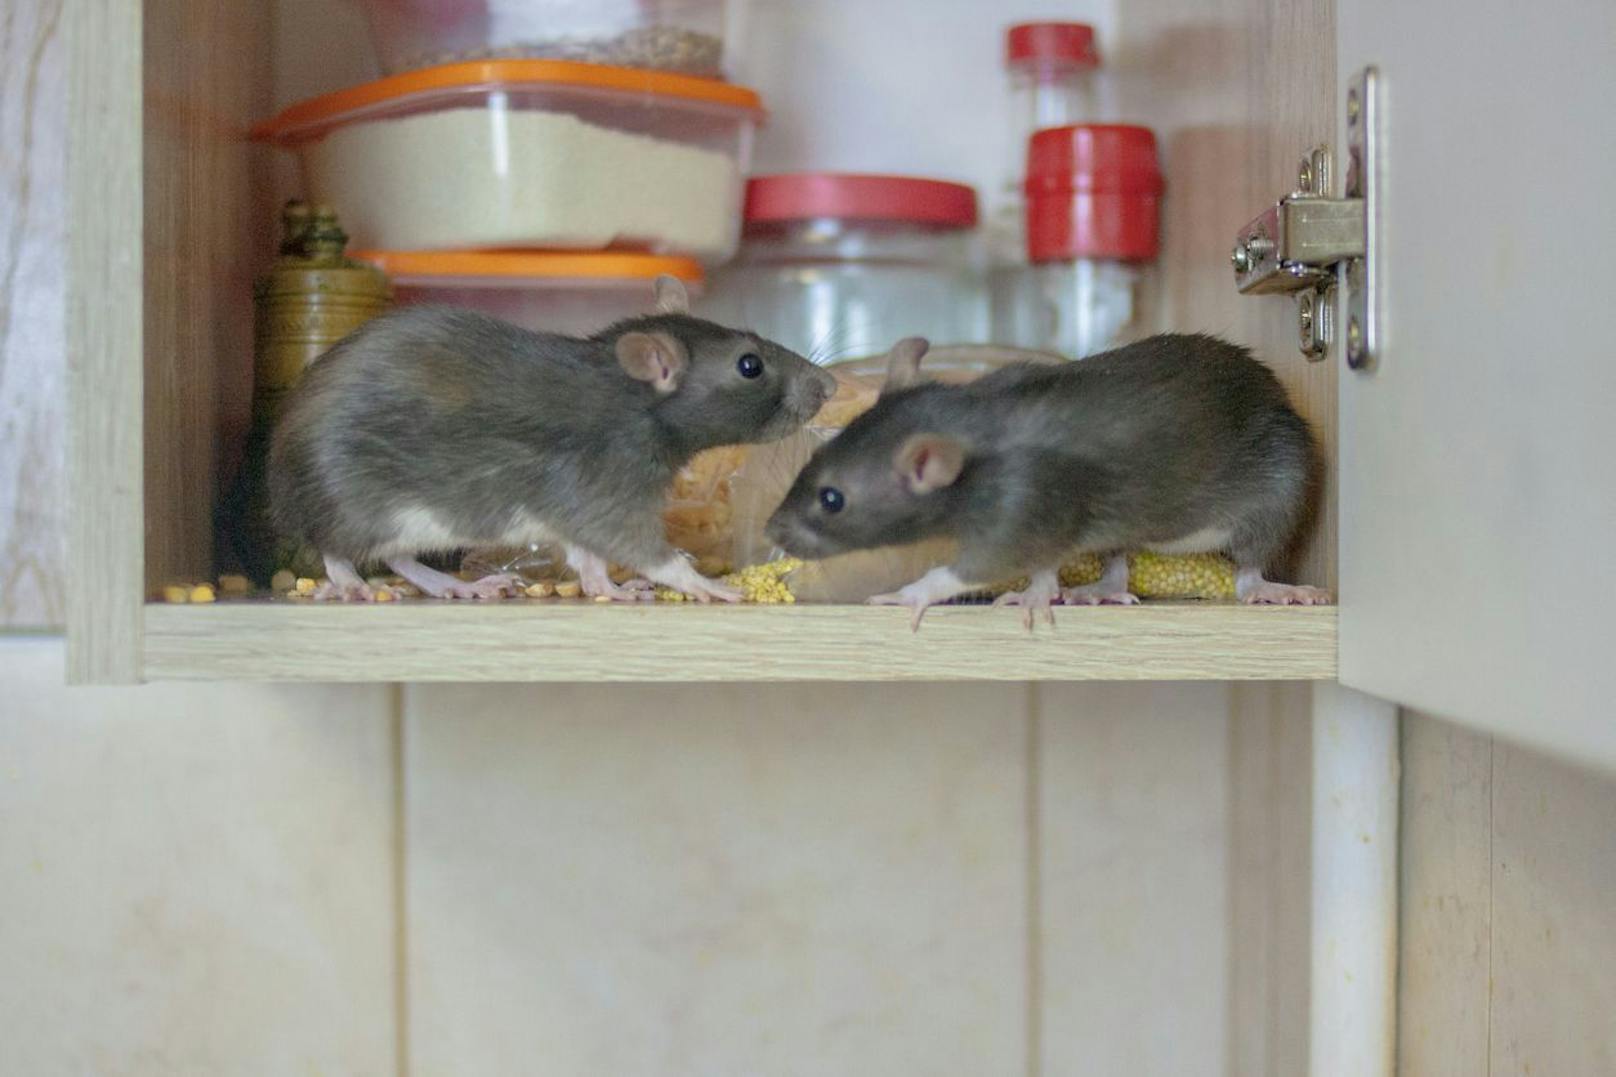 Extremer Geruch! Frau lebt mit 800 Ratten in einem Haus